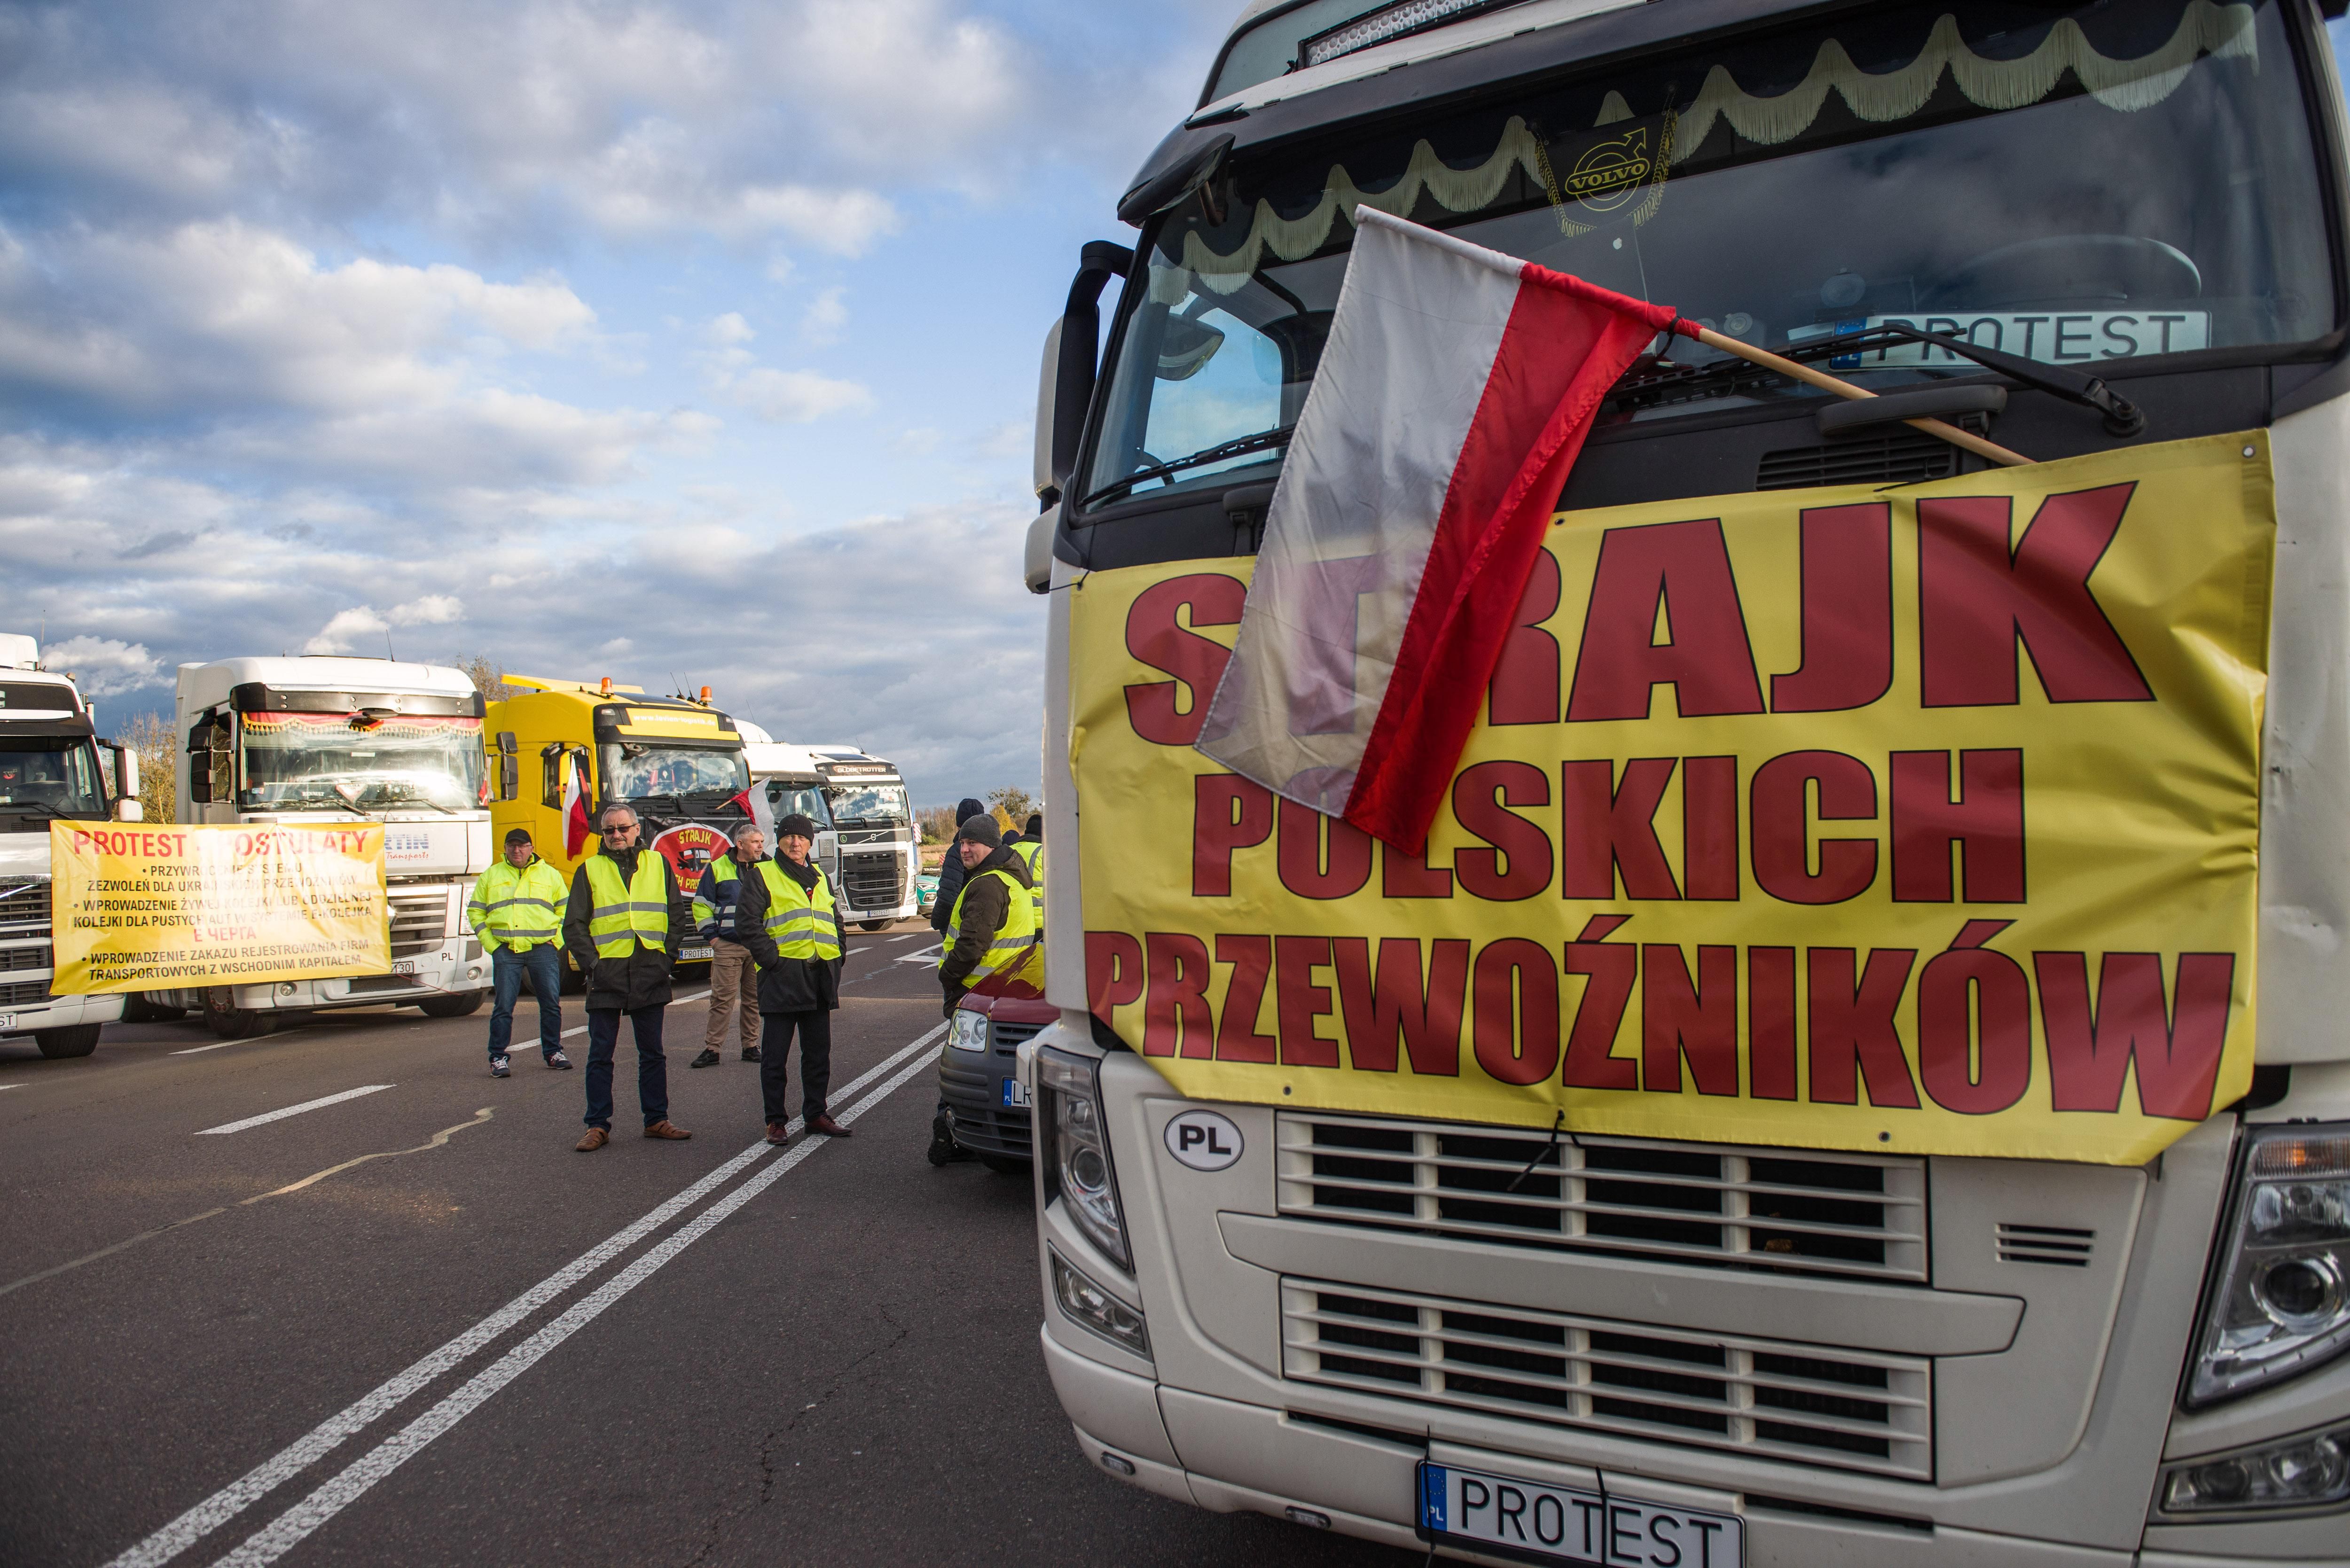 Как Еврокомиссия относится к забастовке польских перевозчиков